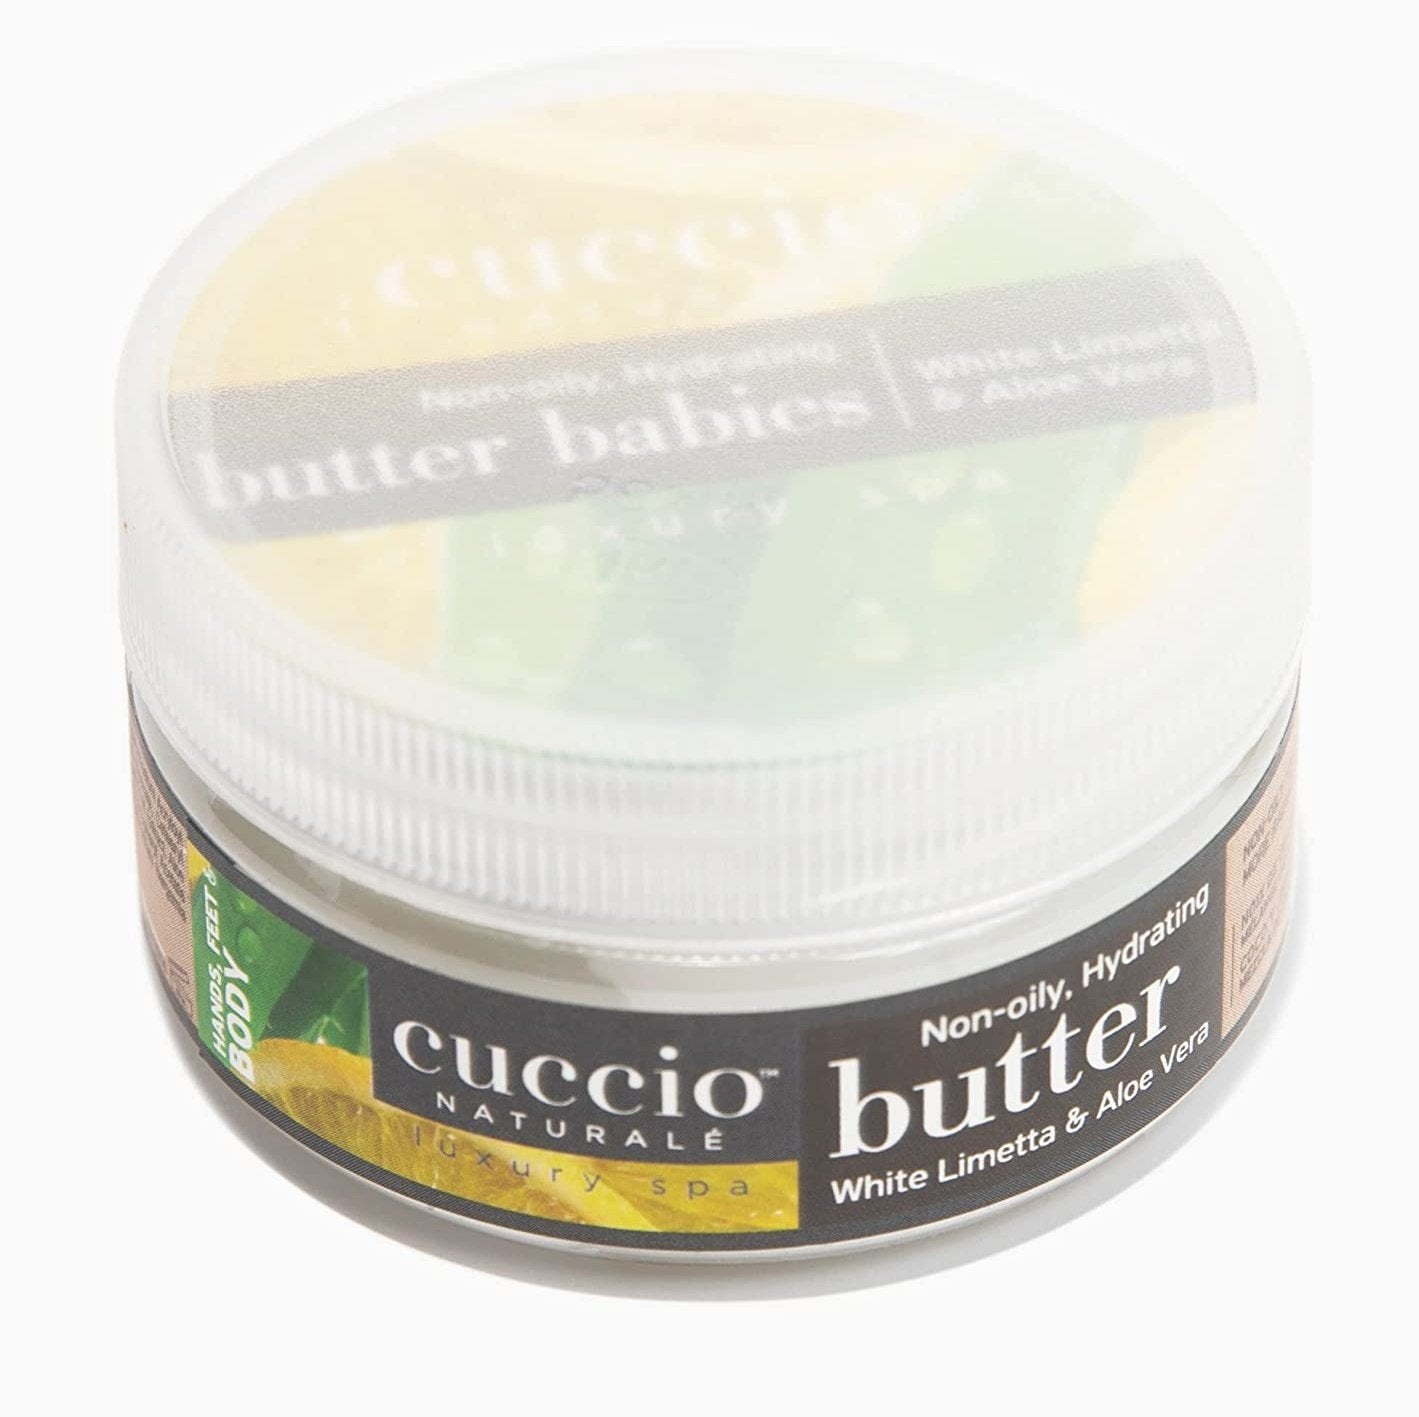 Cuccio Naturale Body Butter 1.5oz